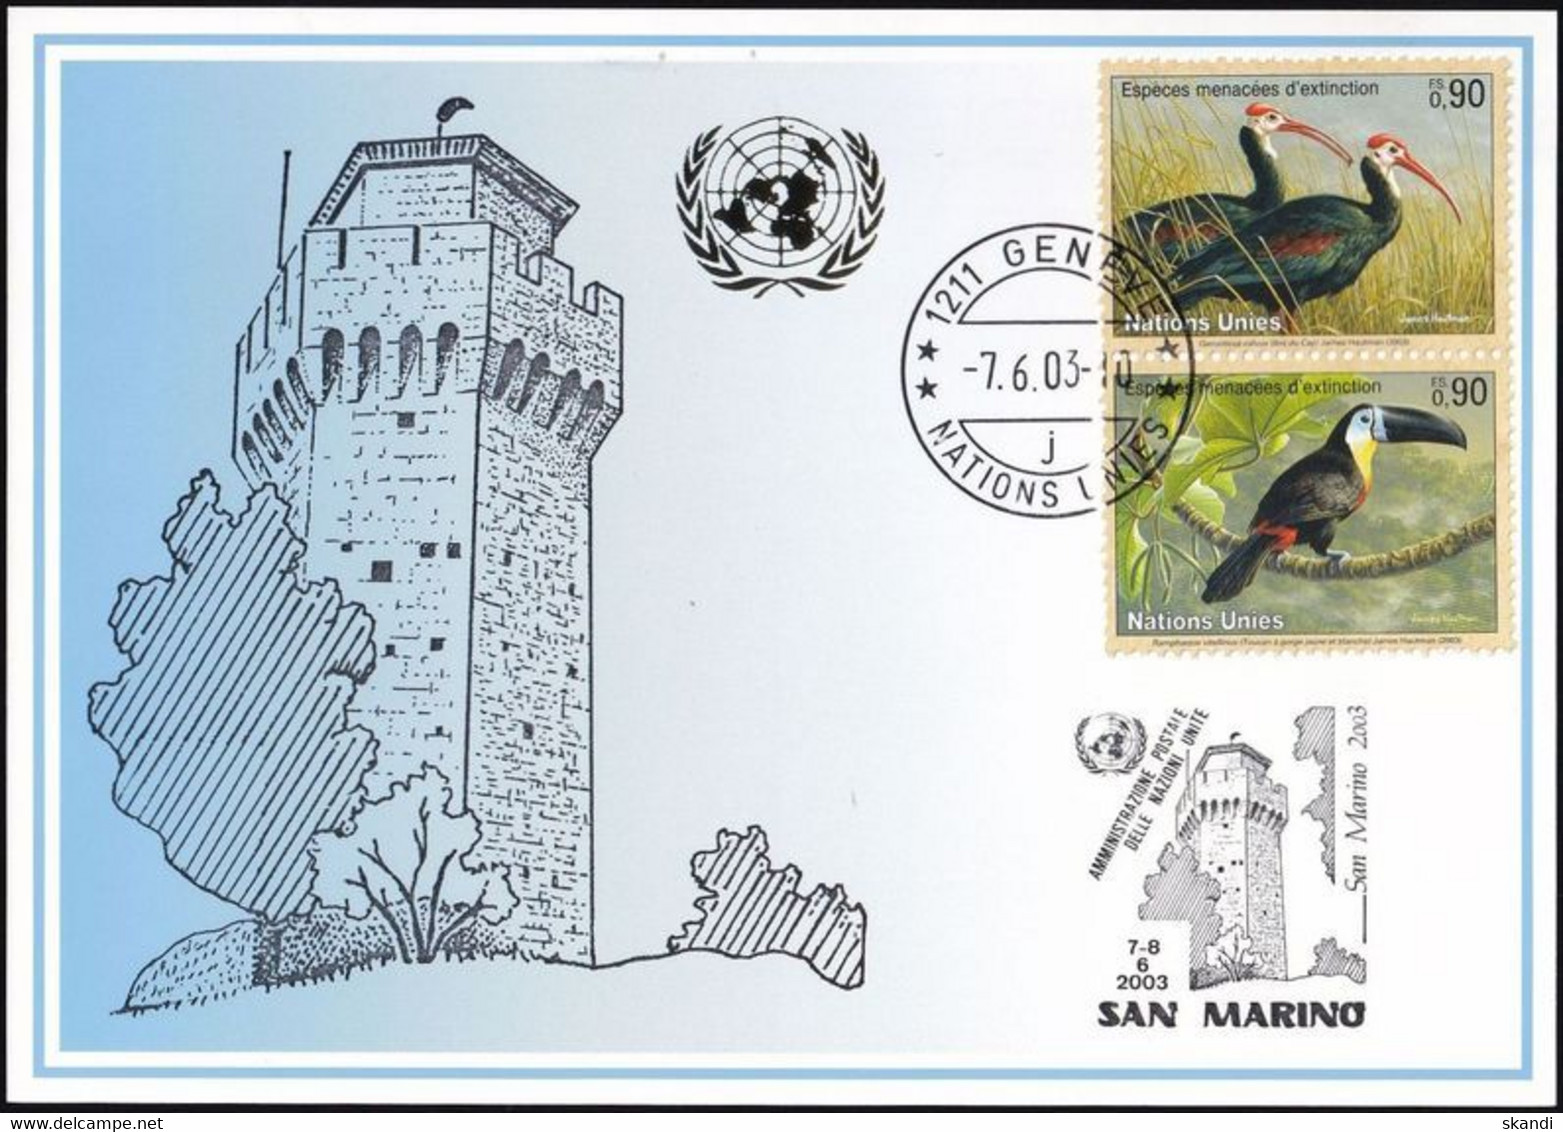 UNO GENF 2003 Mi-Nr. 341 Blaue Karte - Blue Card  Mit Erinnerungsstempel SAN MARINO - Briefe U. Dokumente